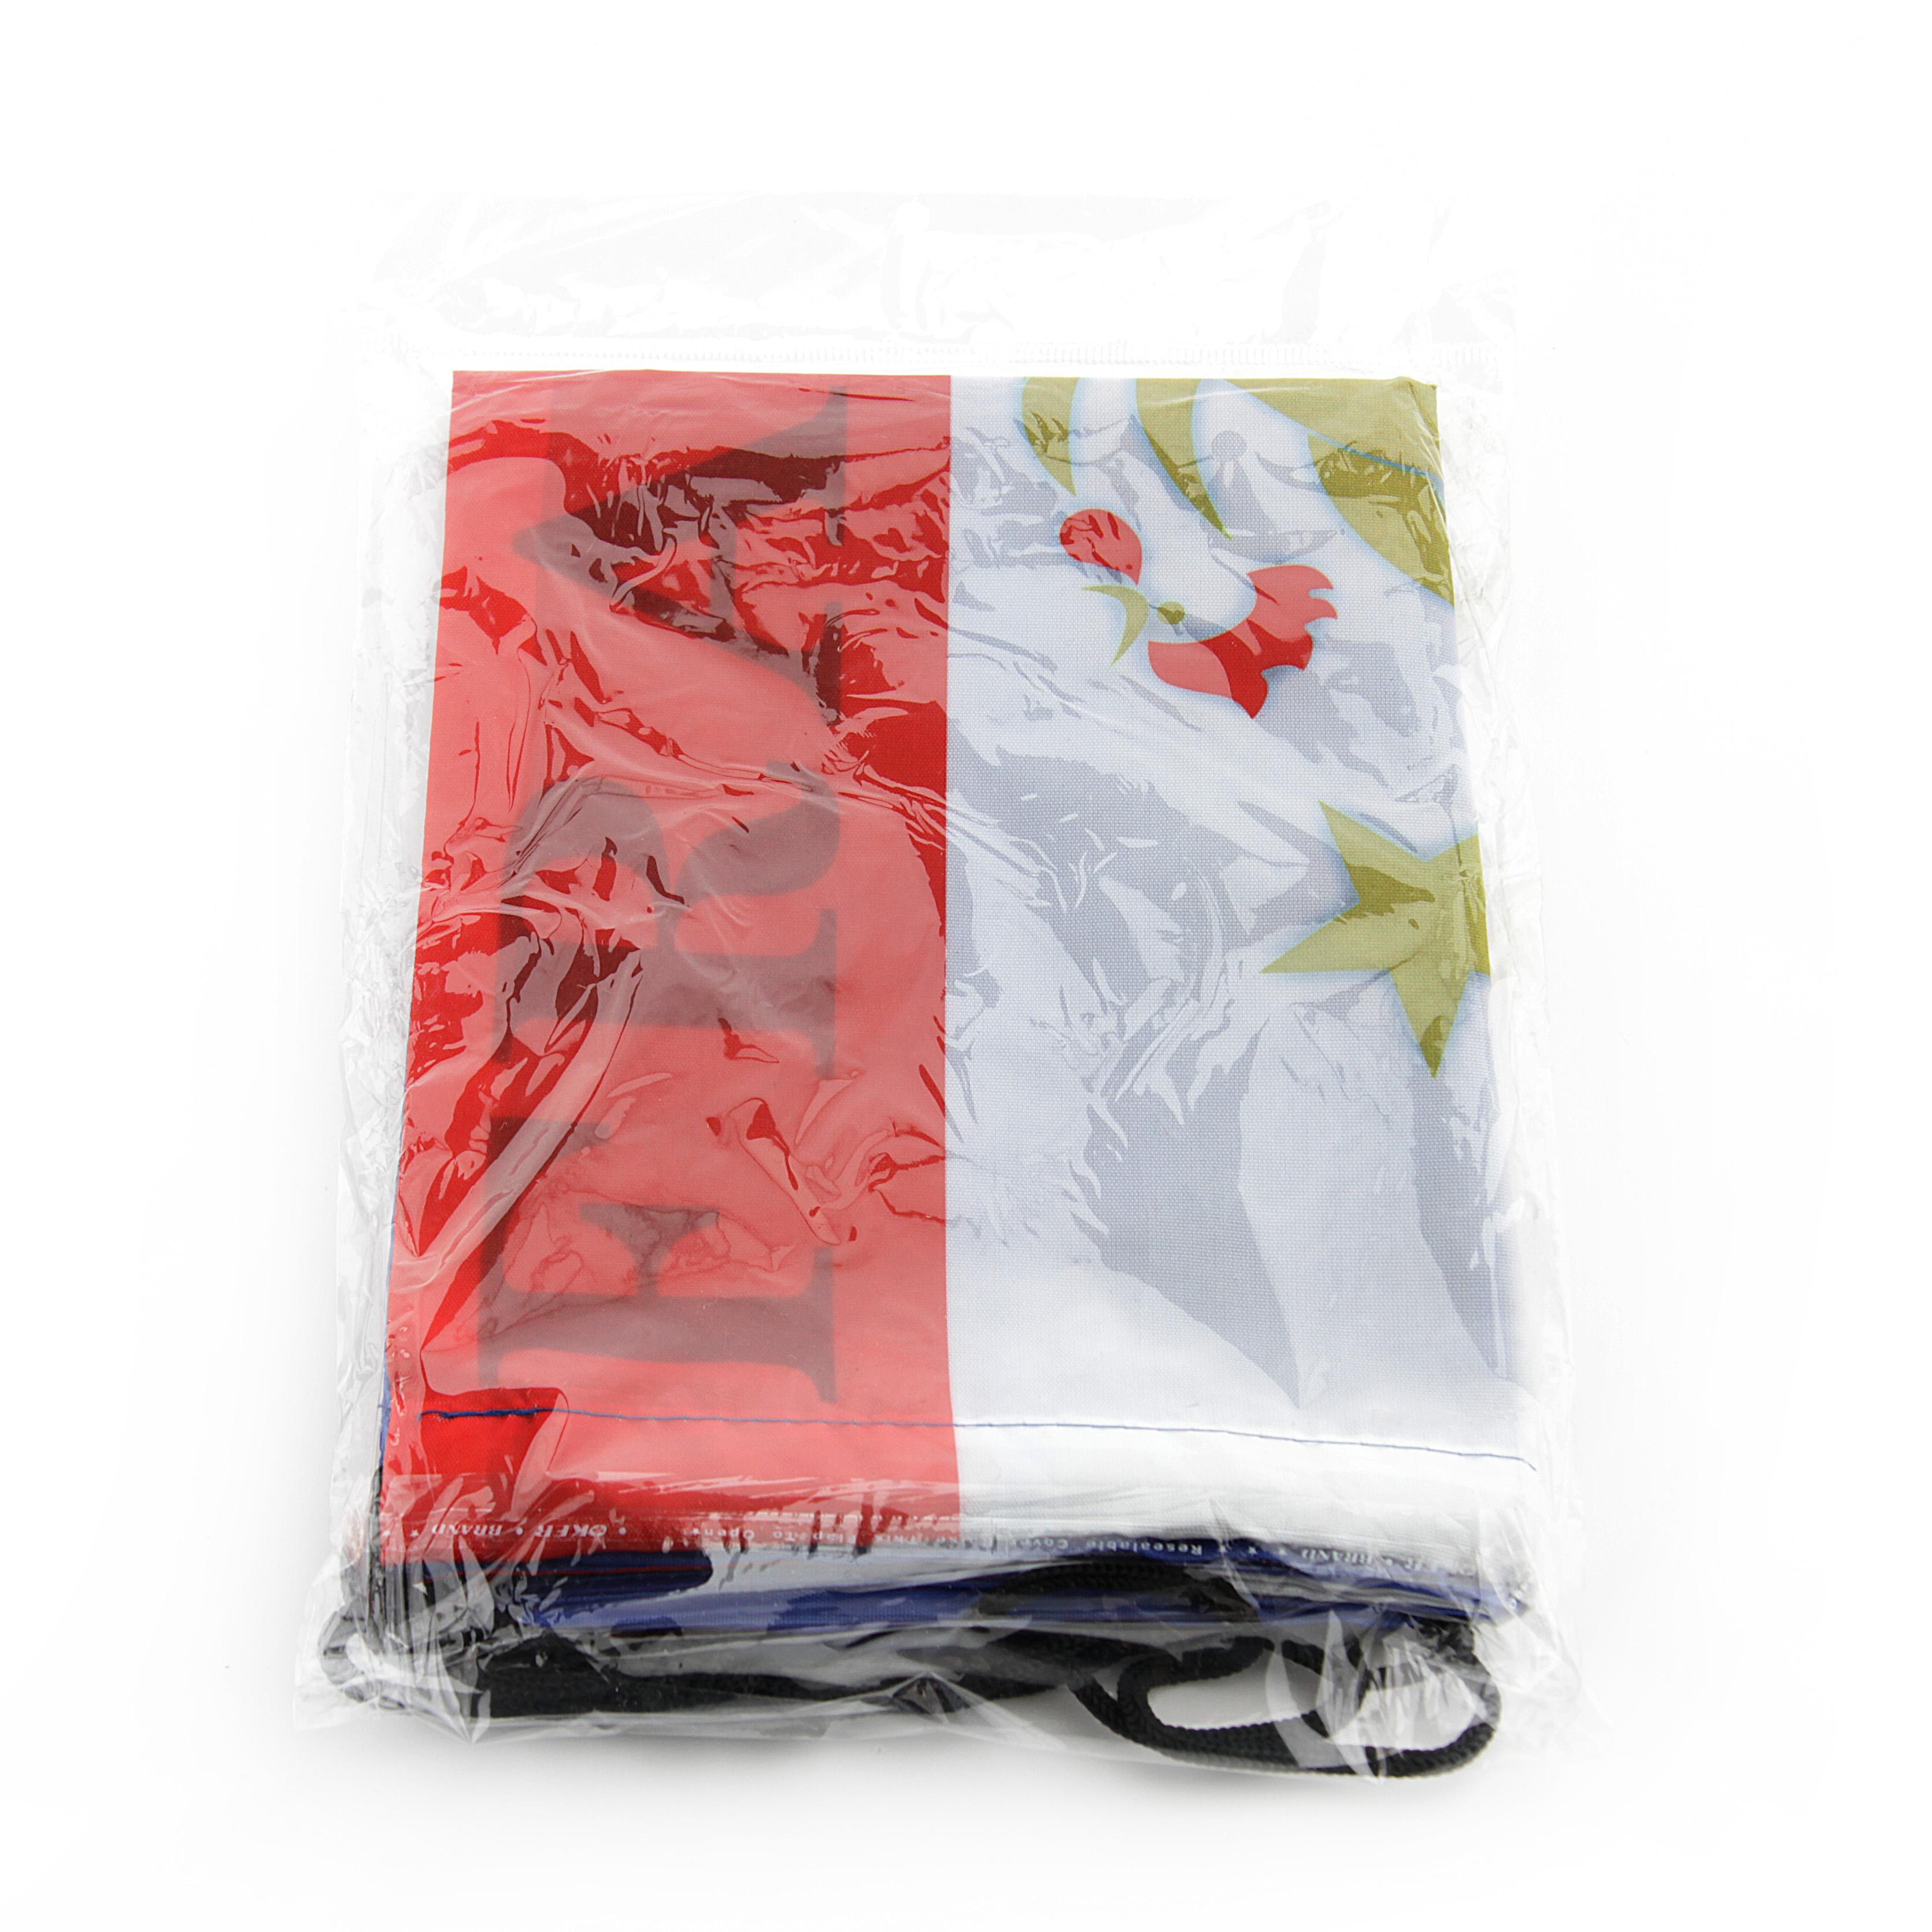 Футбольная сумка France